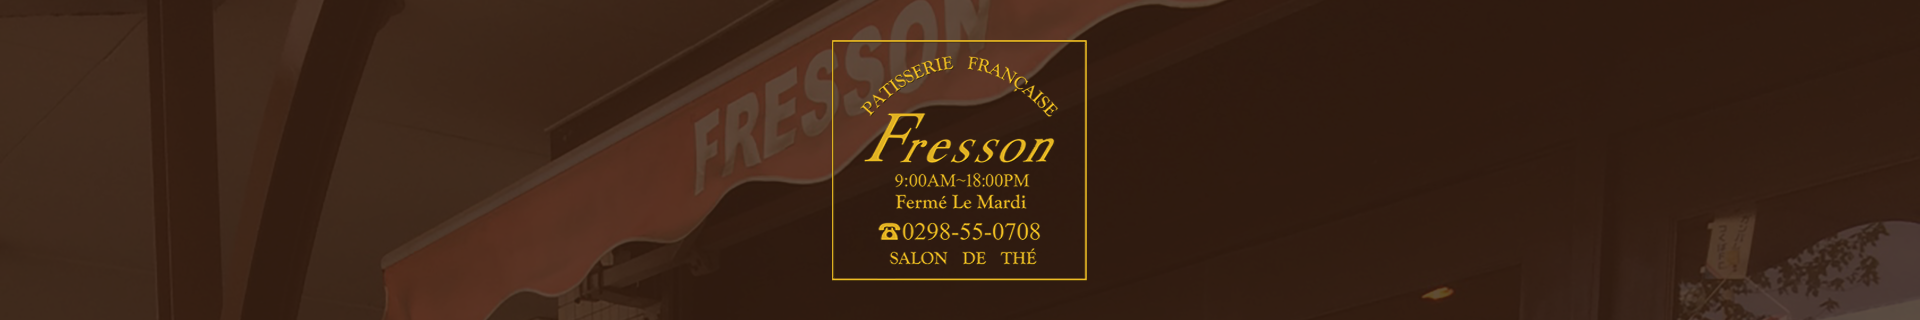 つくば市のフランス洋菓子店フレッソンへのお問い合わせ